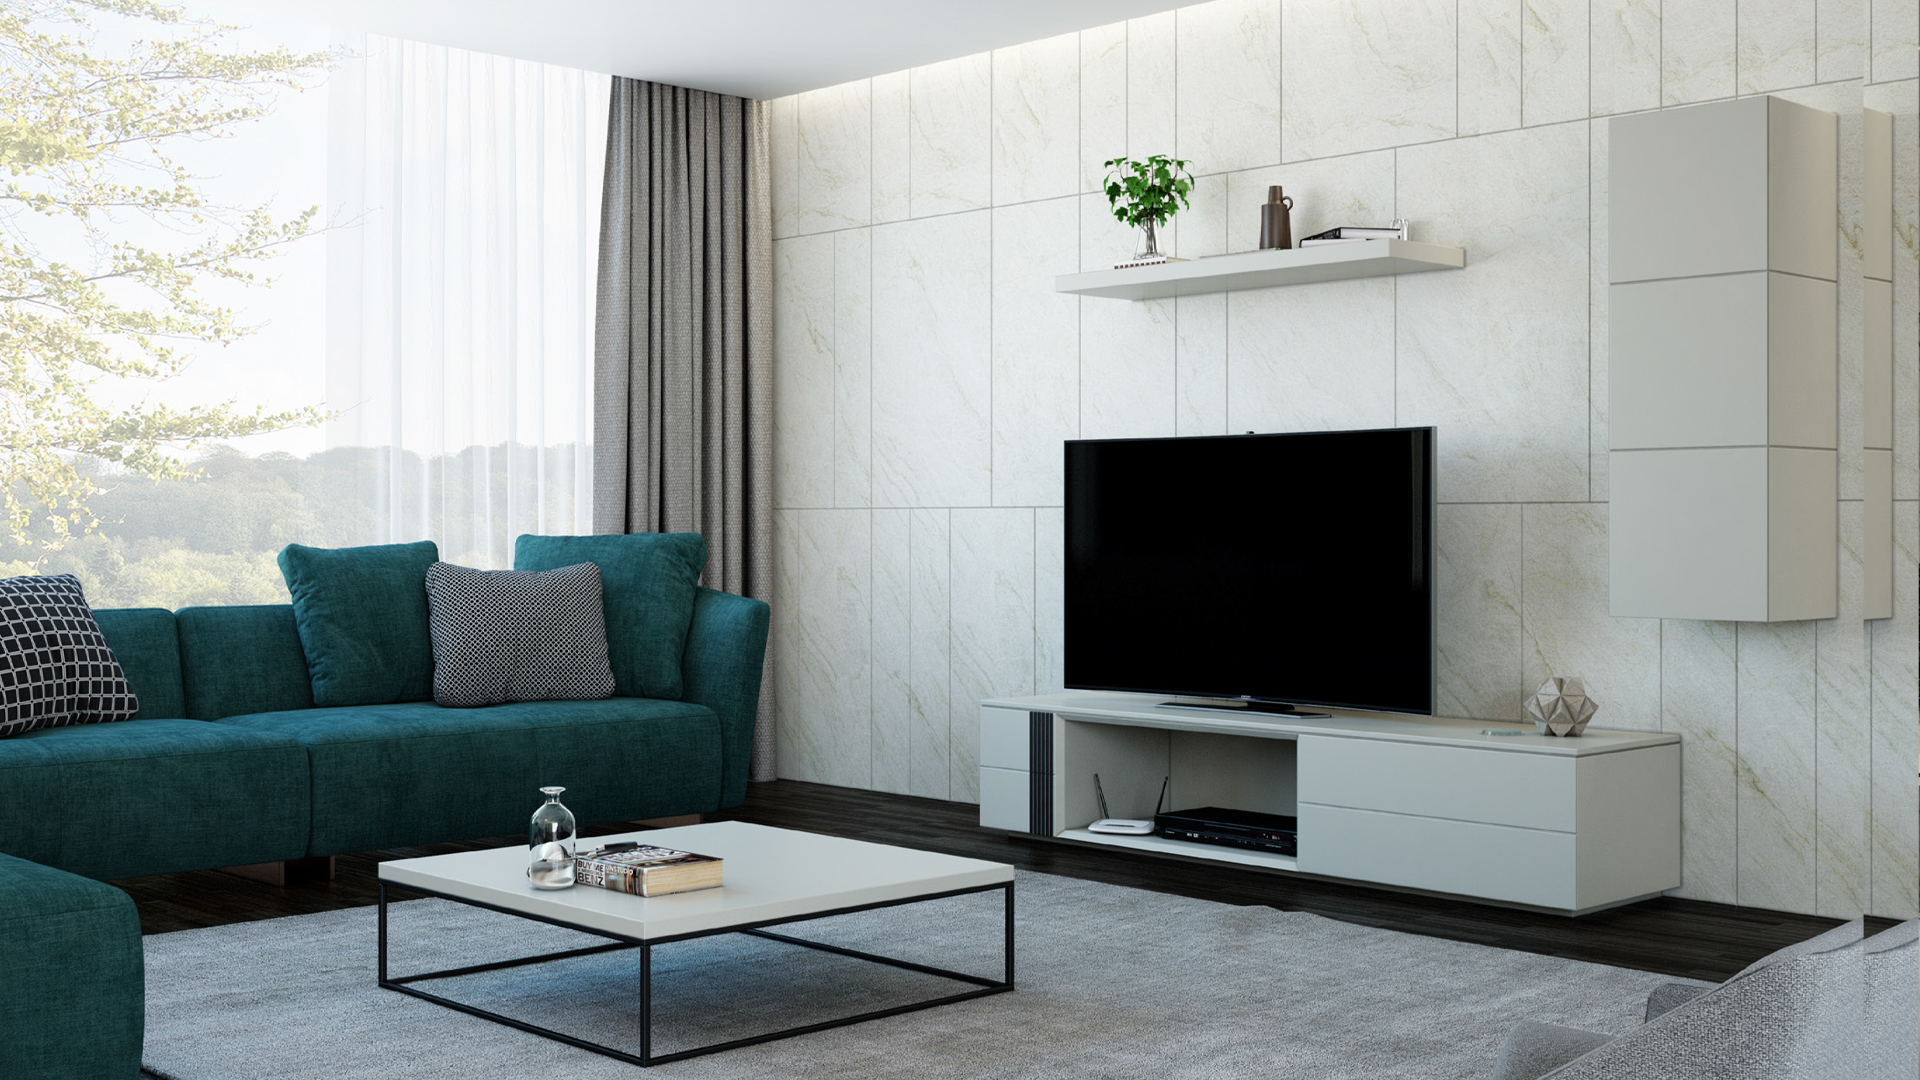 Eliteline mobiliario moderno decoração interiores modern furniture interior decoration décoration intérieure de meubles modernes